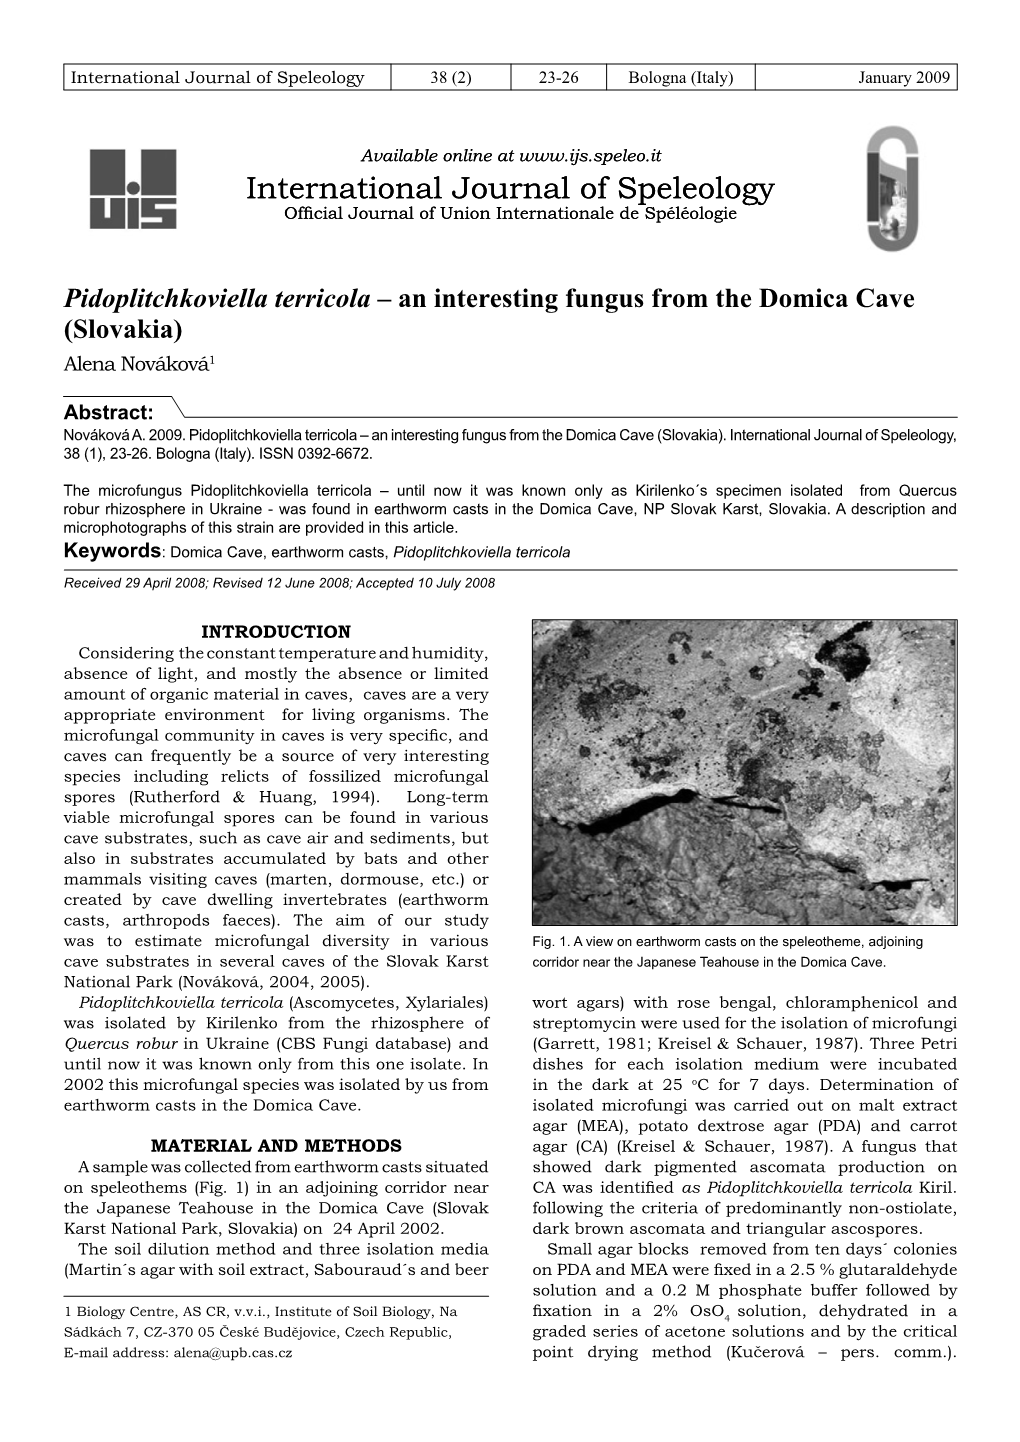 Pidoplitchkoviella Terricola – an Interesting Fungus from the Domica Cave (Slovakia) Alena Nováková1